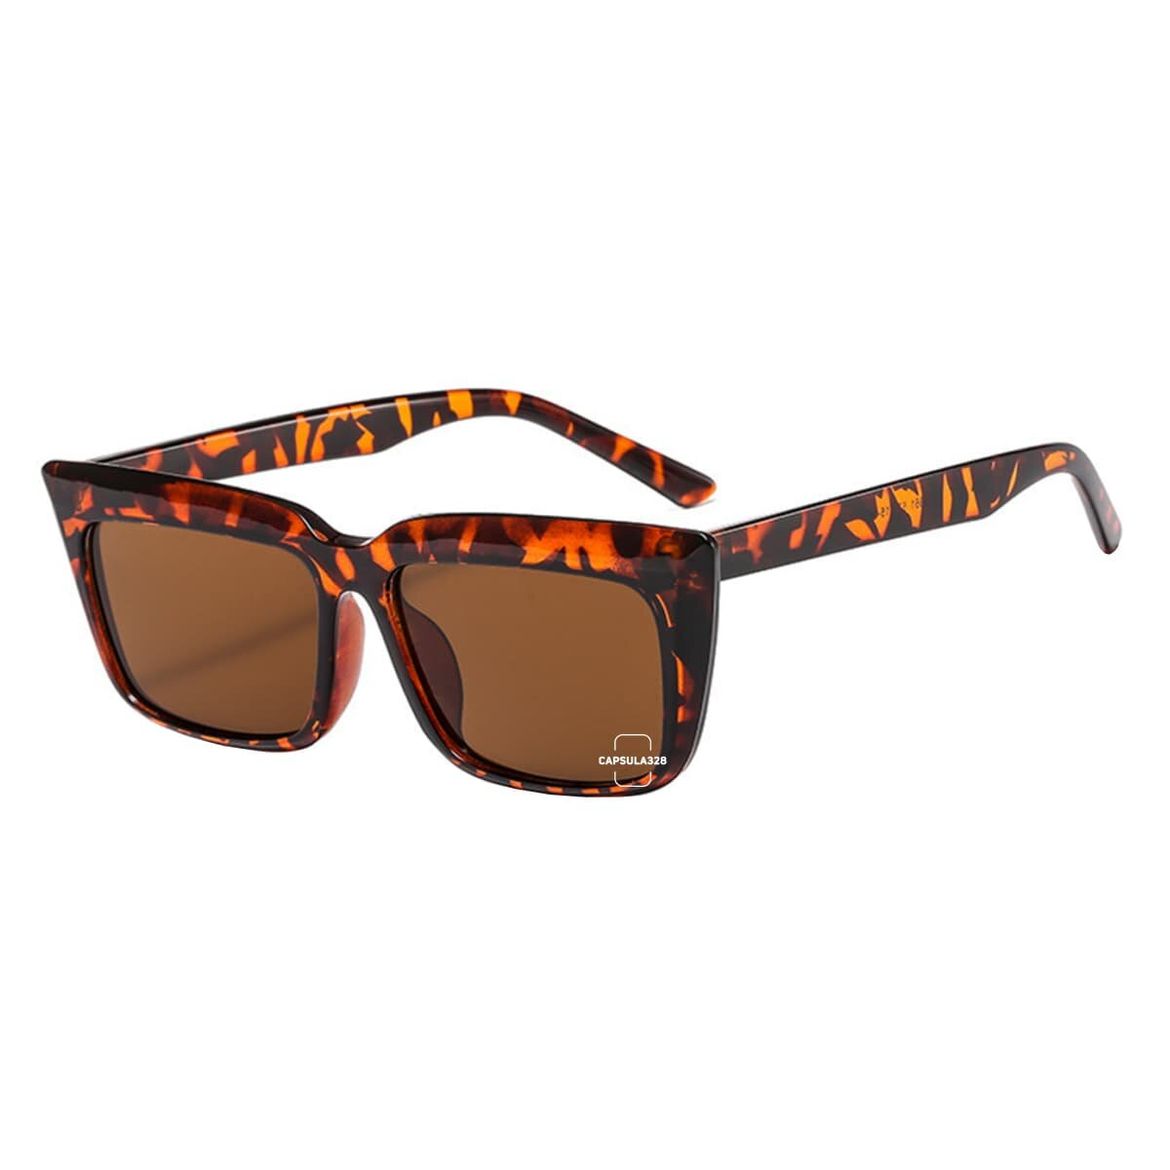 Солнцезащитные очки Monki 3102